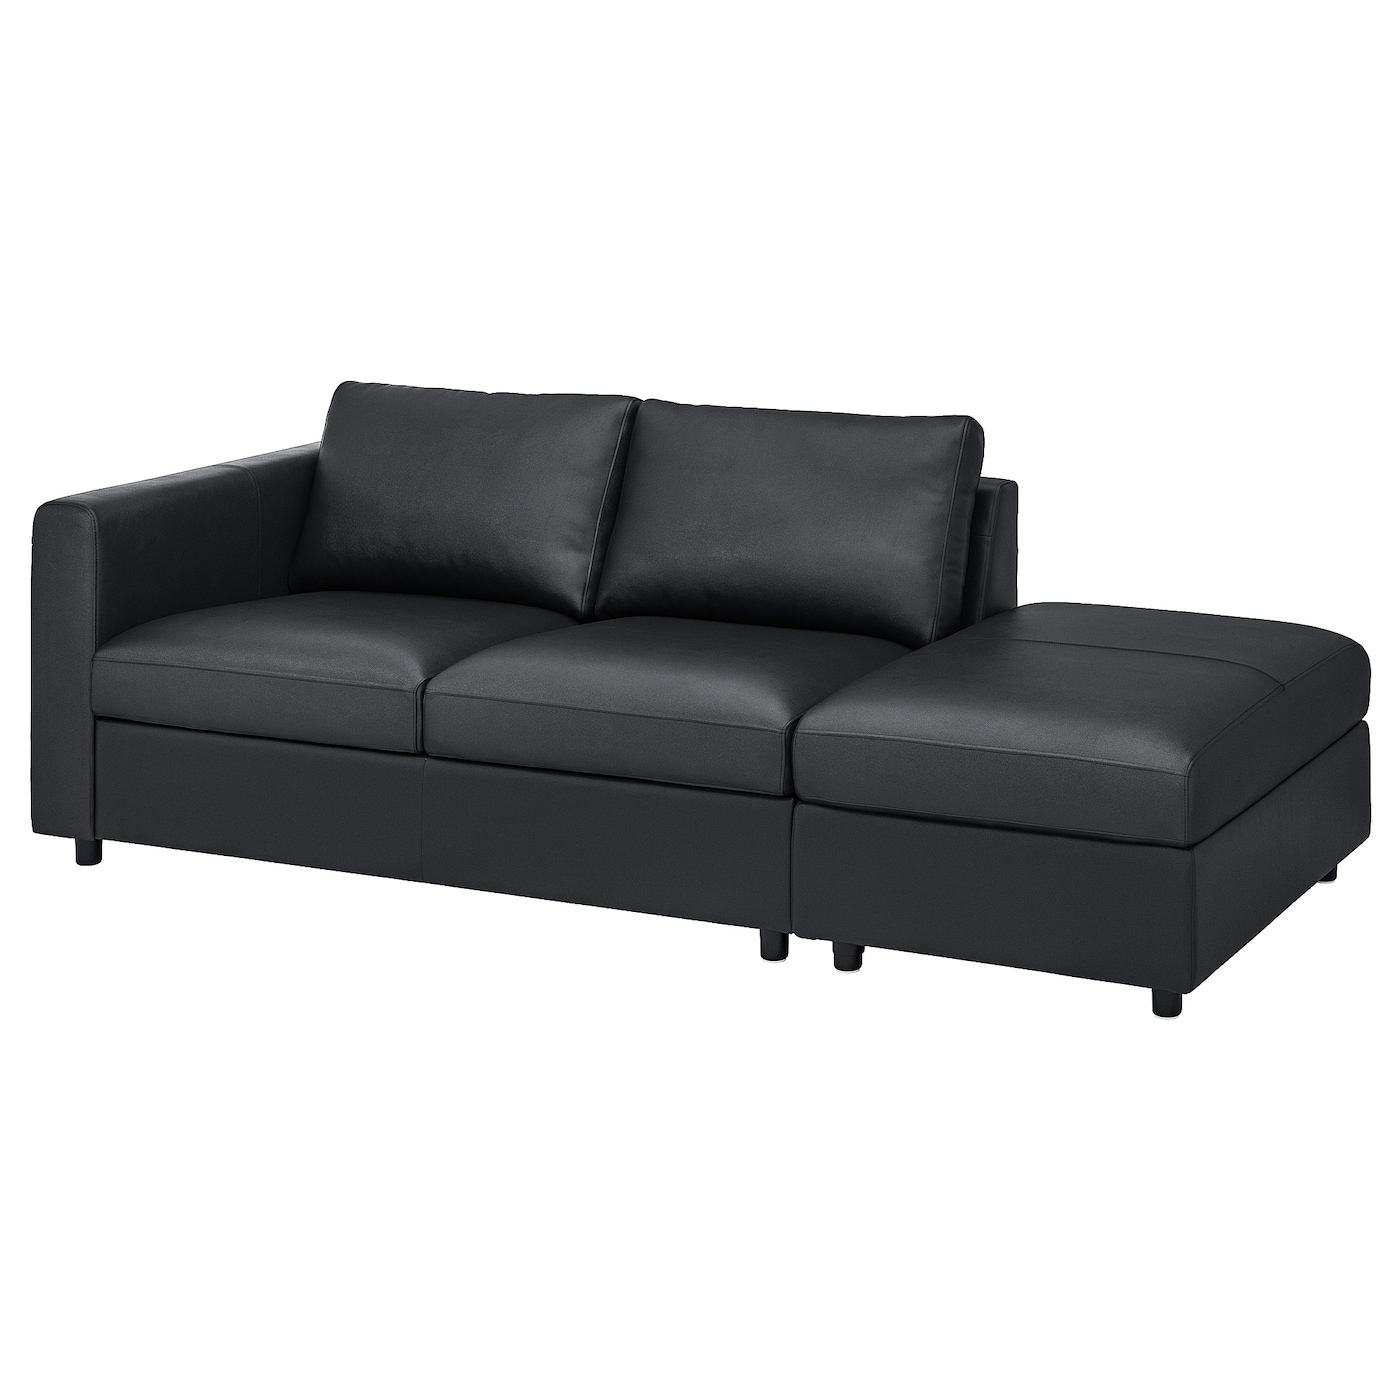 3-местный диван - IKEA VIMLE, 227х98х80 см, черный, кожа, ВИМЛЕ ИКЕА